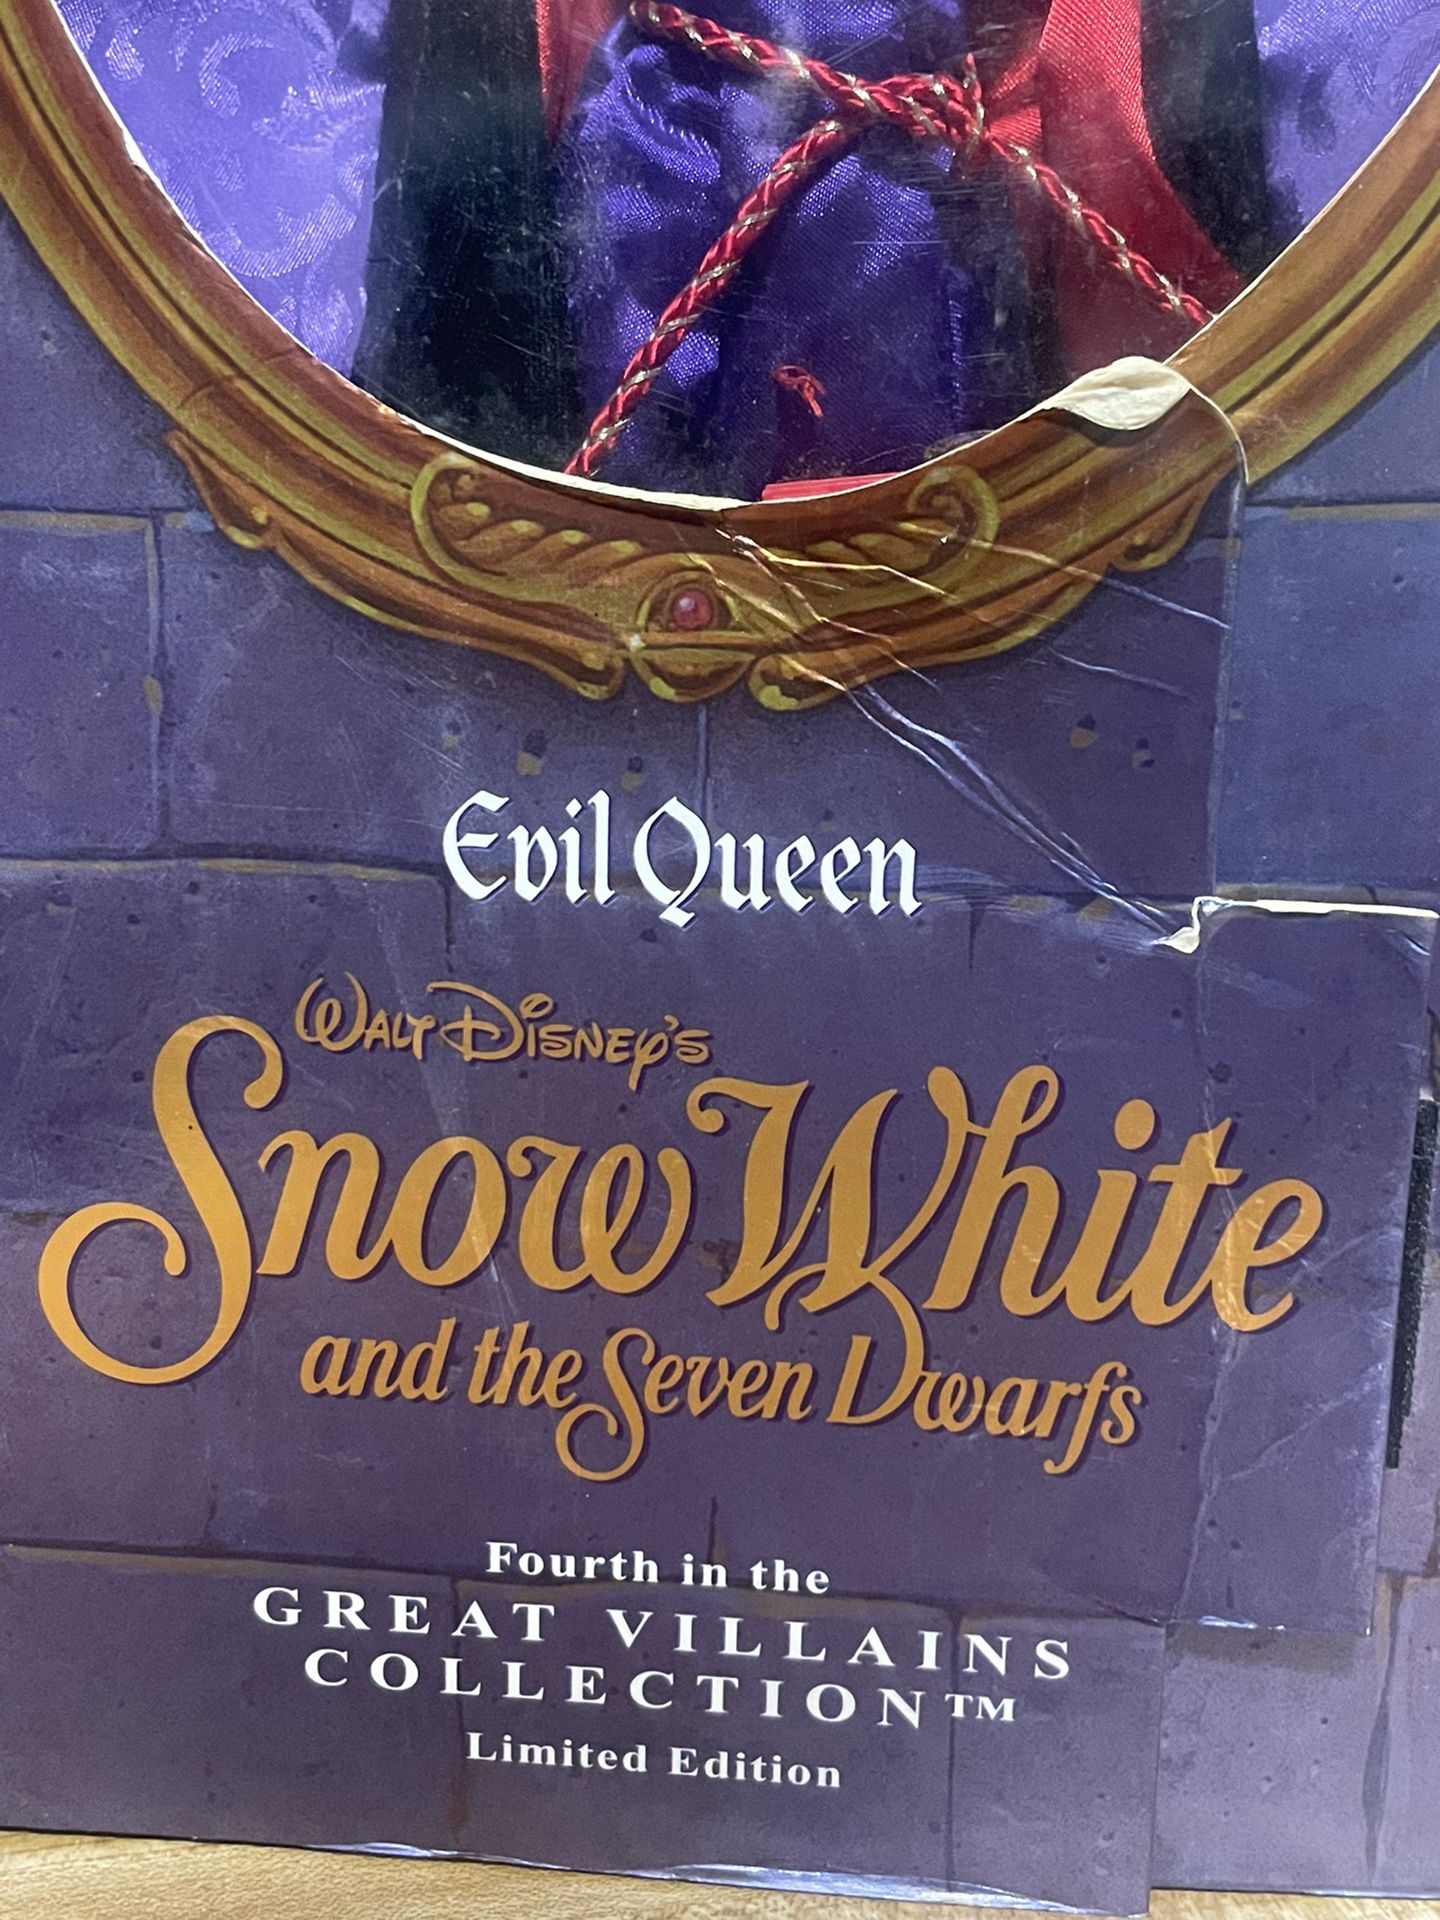 Vintage Snow White Evil Queen Disney Barbie Great Villains Collection 1998